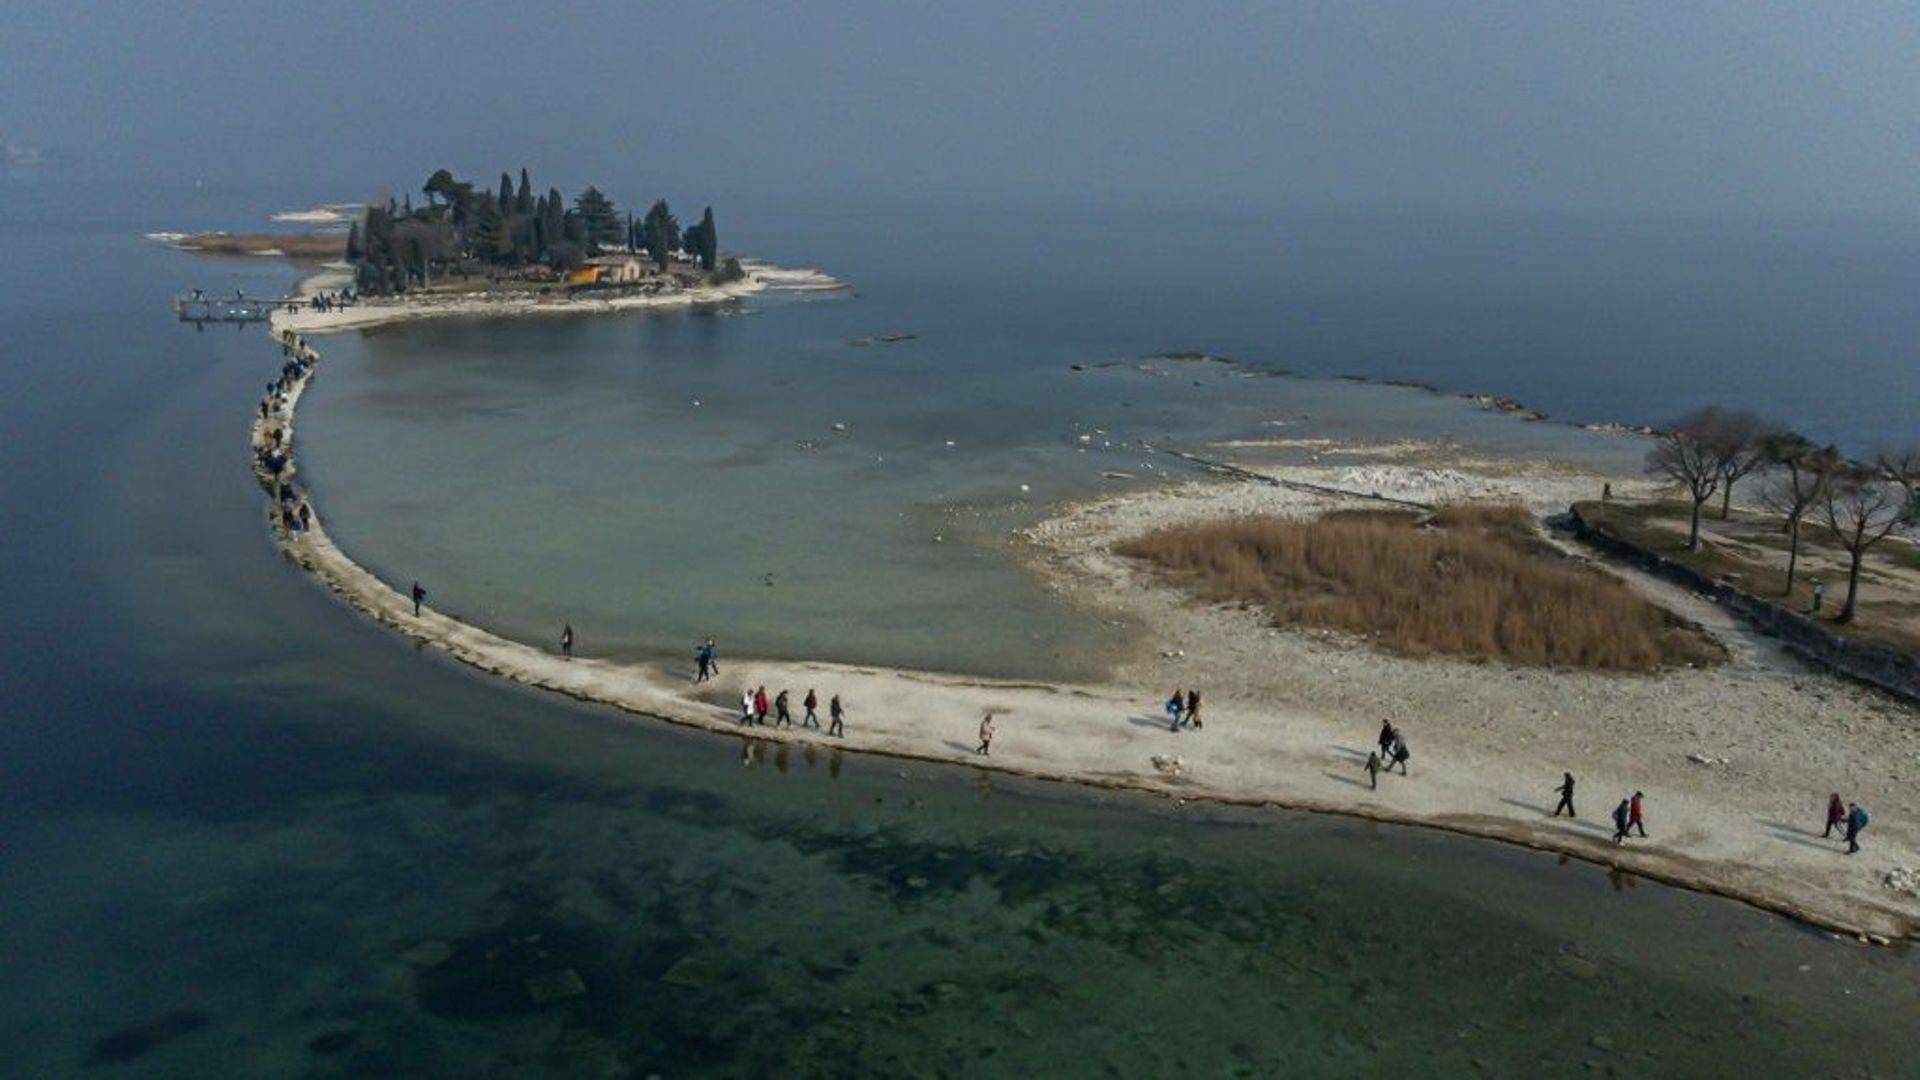 Un îlot du lac de Garde, symbole de la sécheresse frappant l'Italie.